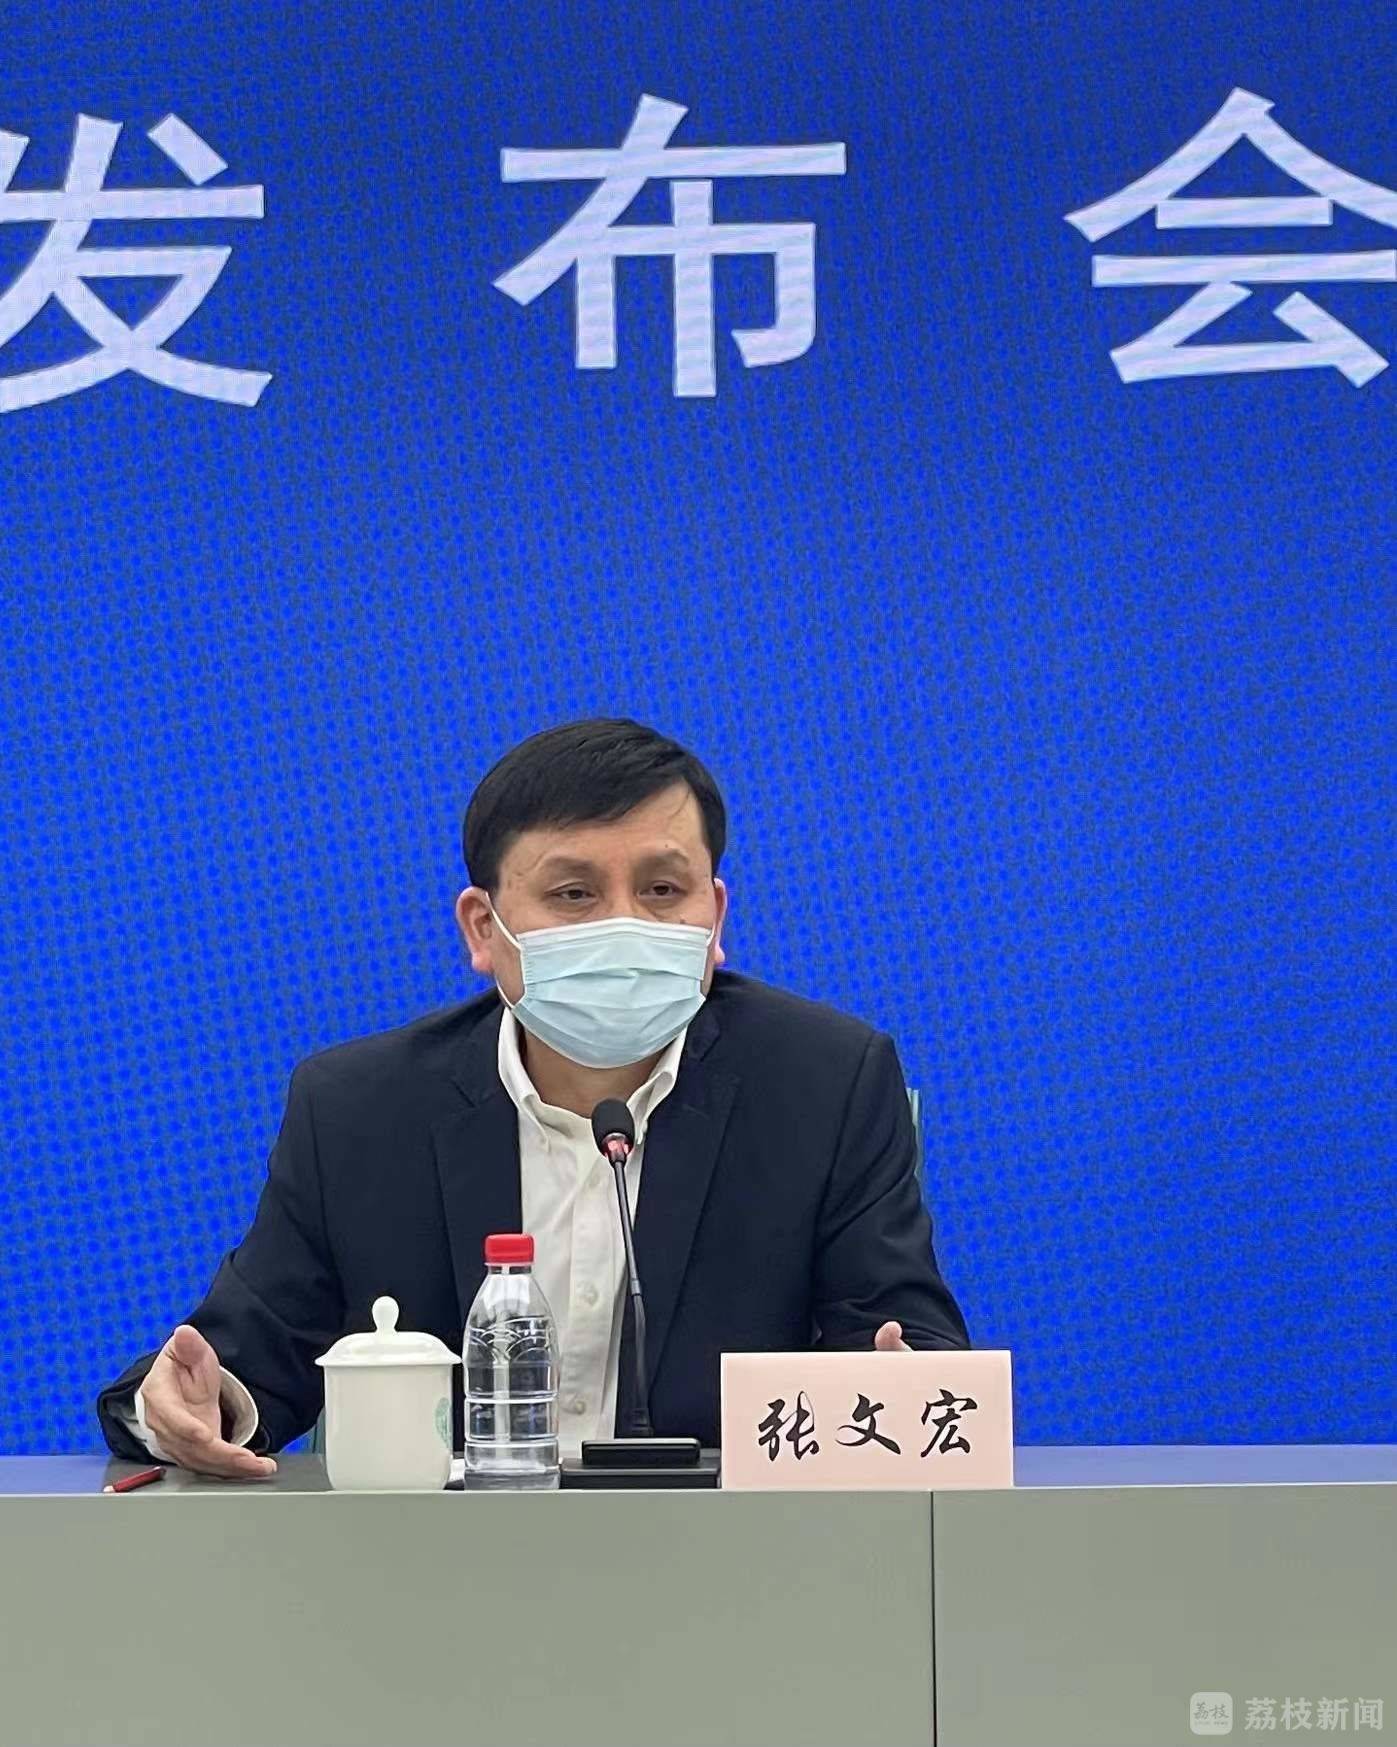 上海|张文宏解读国家新版诊疗方案 介绍上海防疫措施具体变化